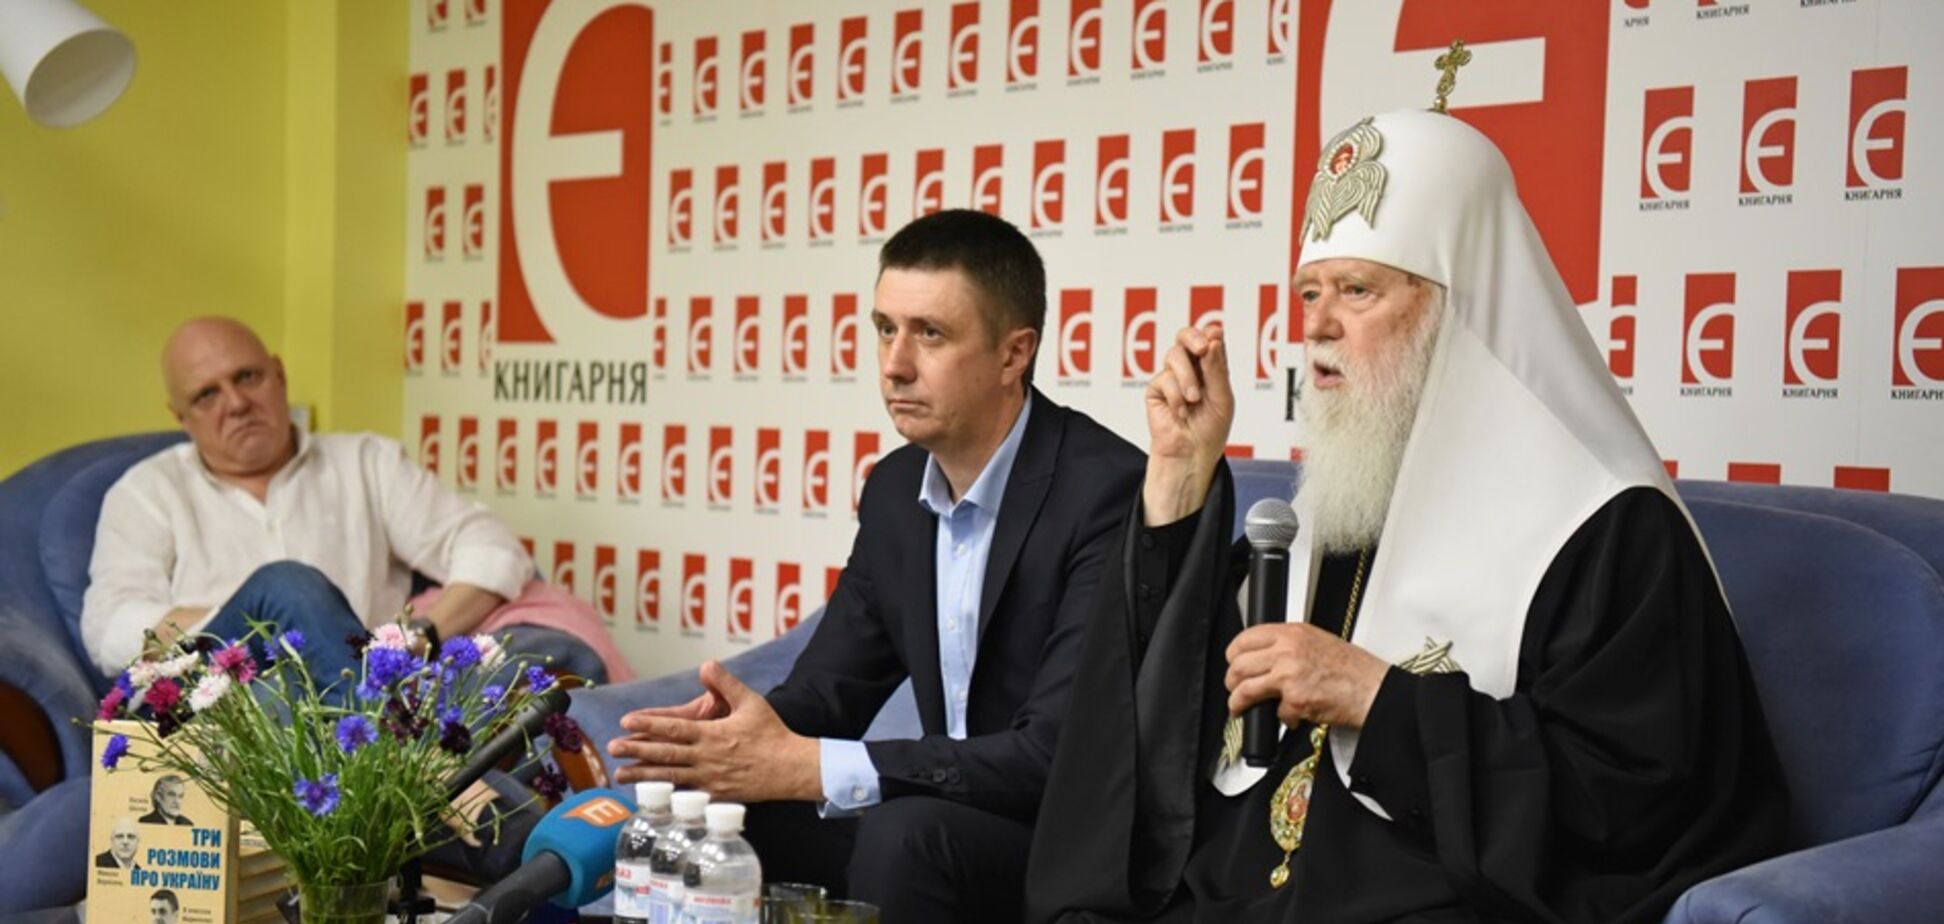 Кириленко презентував у Києві книгу 'Три розмови про Україну'